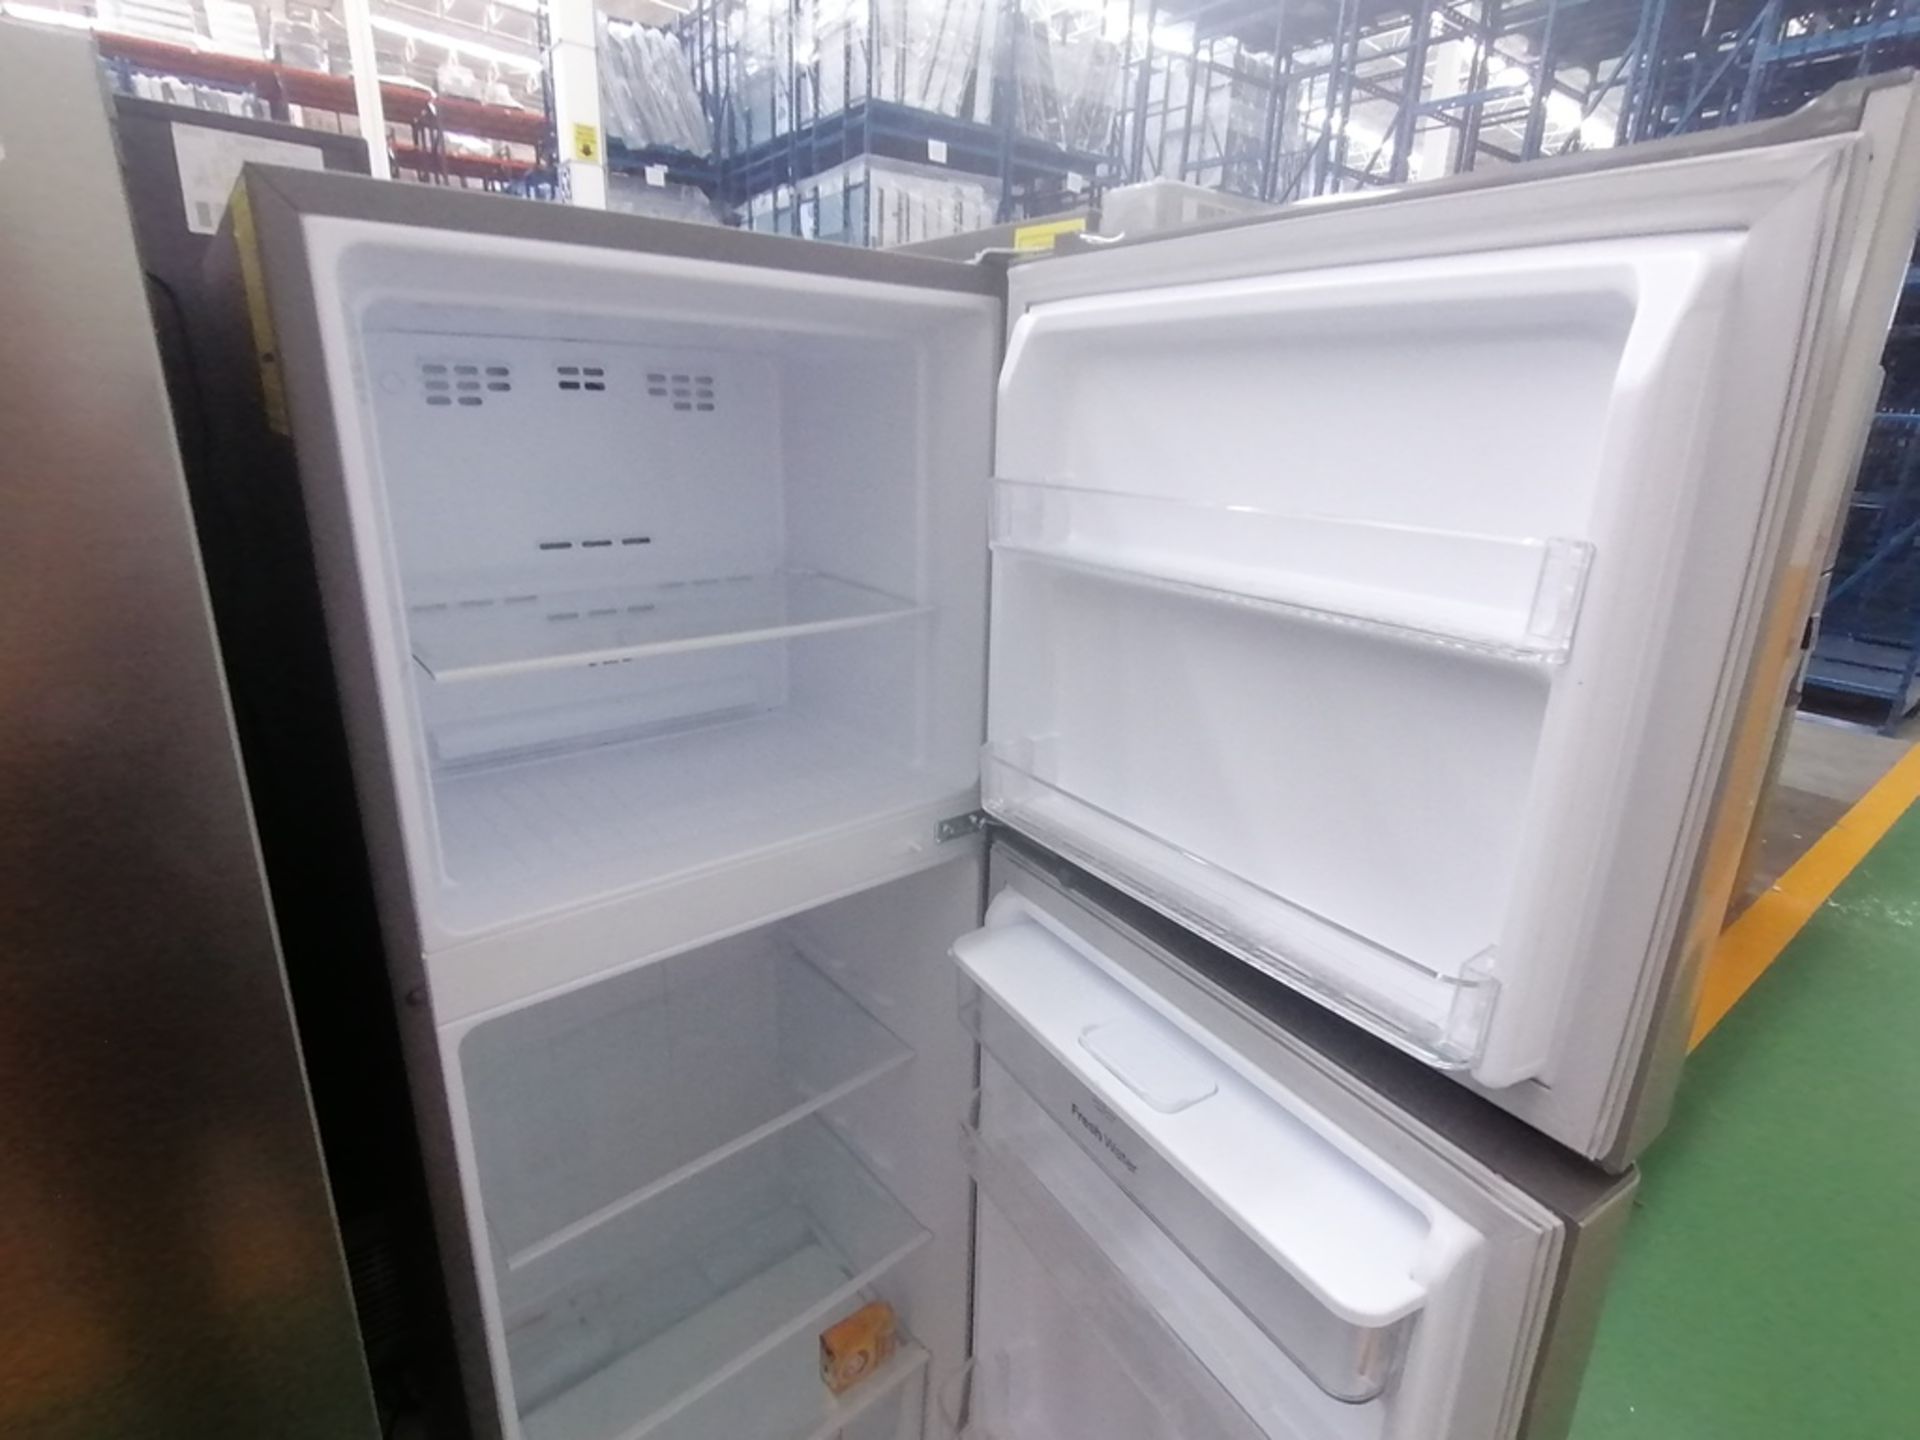 Lote de 2 refrigeradores incluye: 1 Refrigerador con dispensador de agua, Marca Winia, Modelo DFR40 - Image 12 of 16